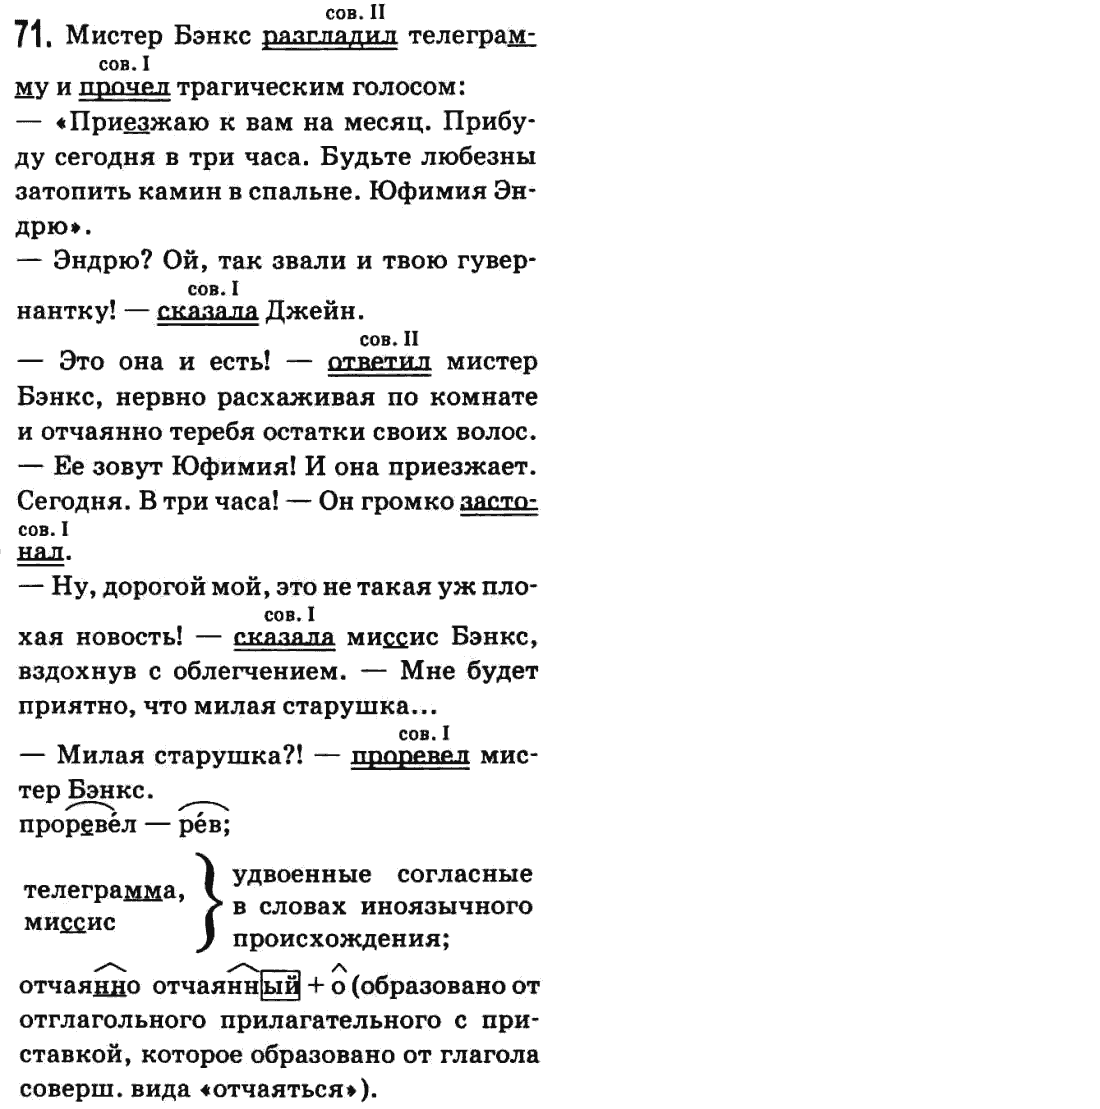 Русский язык 9 класс Баландина Н.Ф., Дегтярева К.В. Задание 71